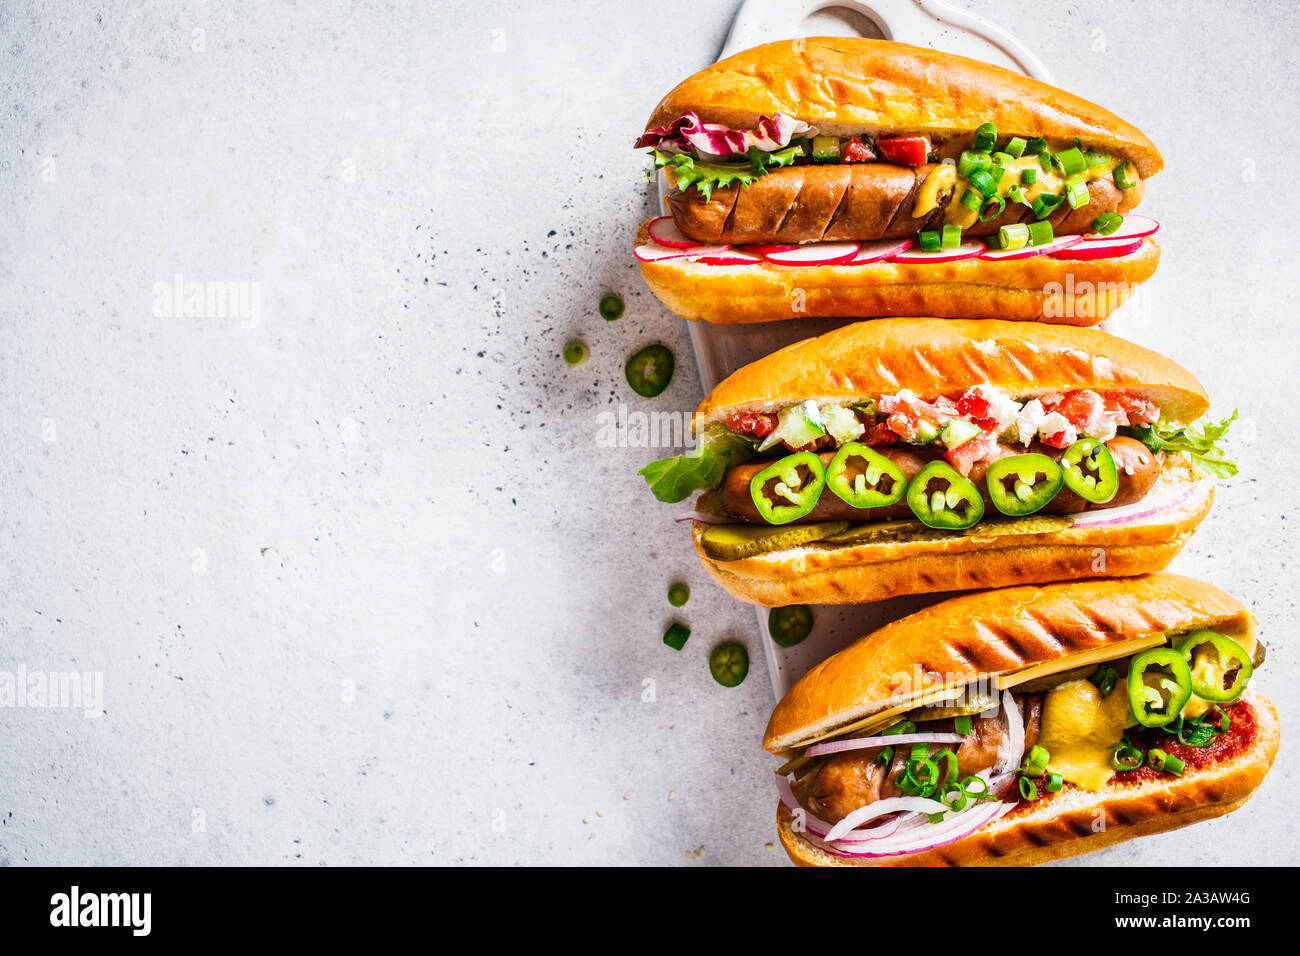 Hot dogs mit verschiedenen Toppings auf einem weißen Hintergrund, kopieren. Fast food Konzept. Stockfoto